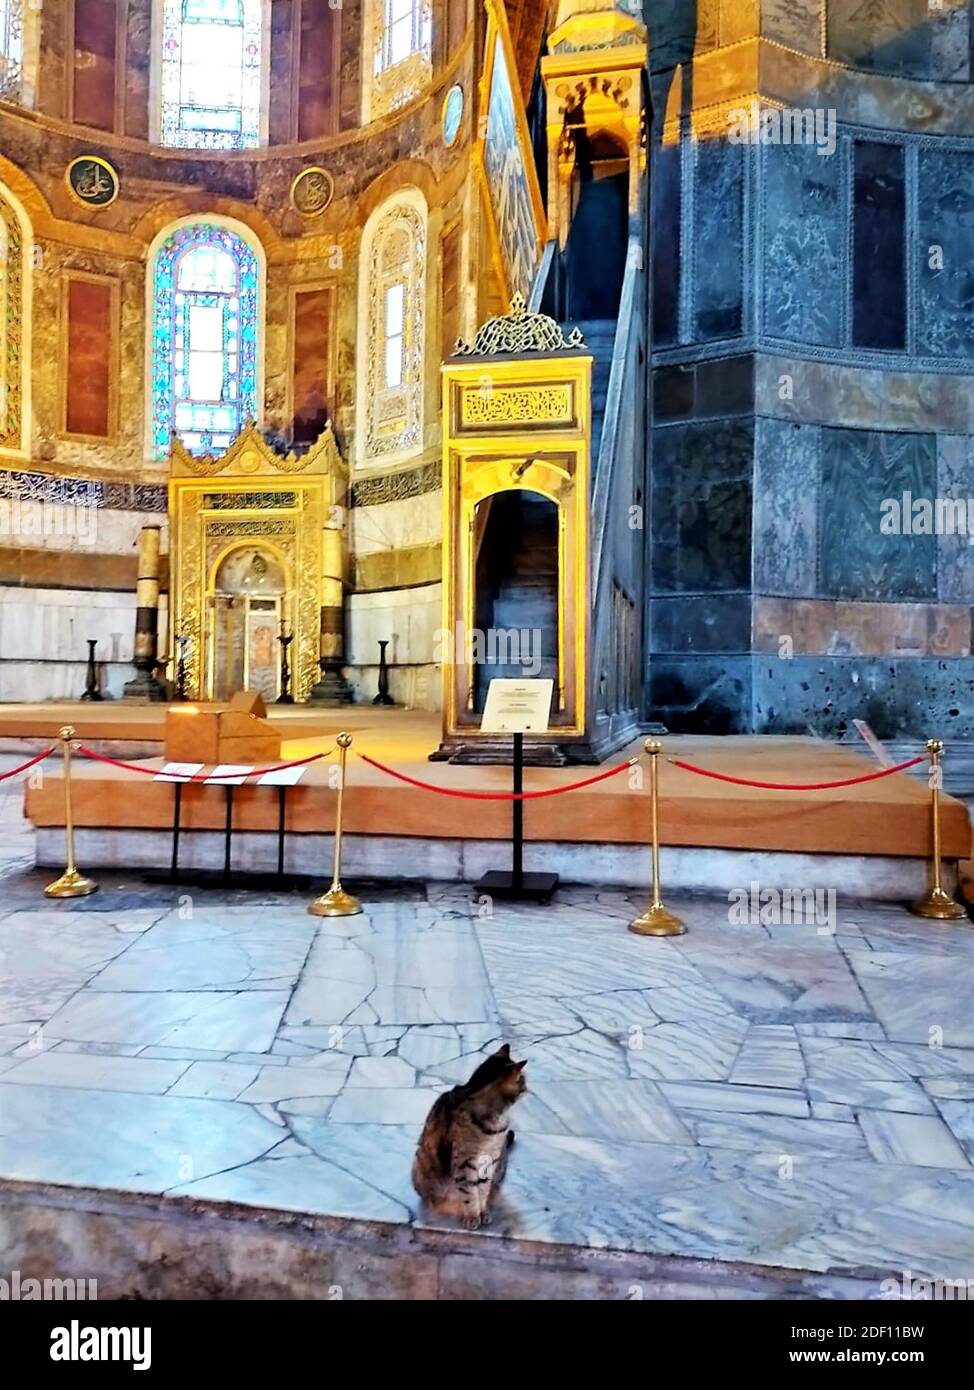 Museo Hagia Sophia e Cat gli., architettura bizantina, famoso punto di riferimento e meraviglia architettonica del mondo Istanbul, Turchia Foto Stock